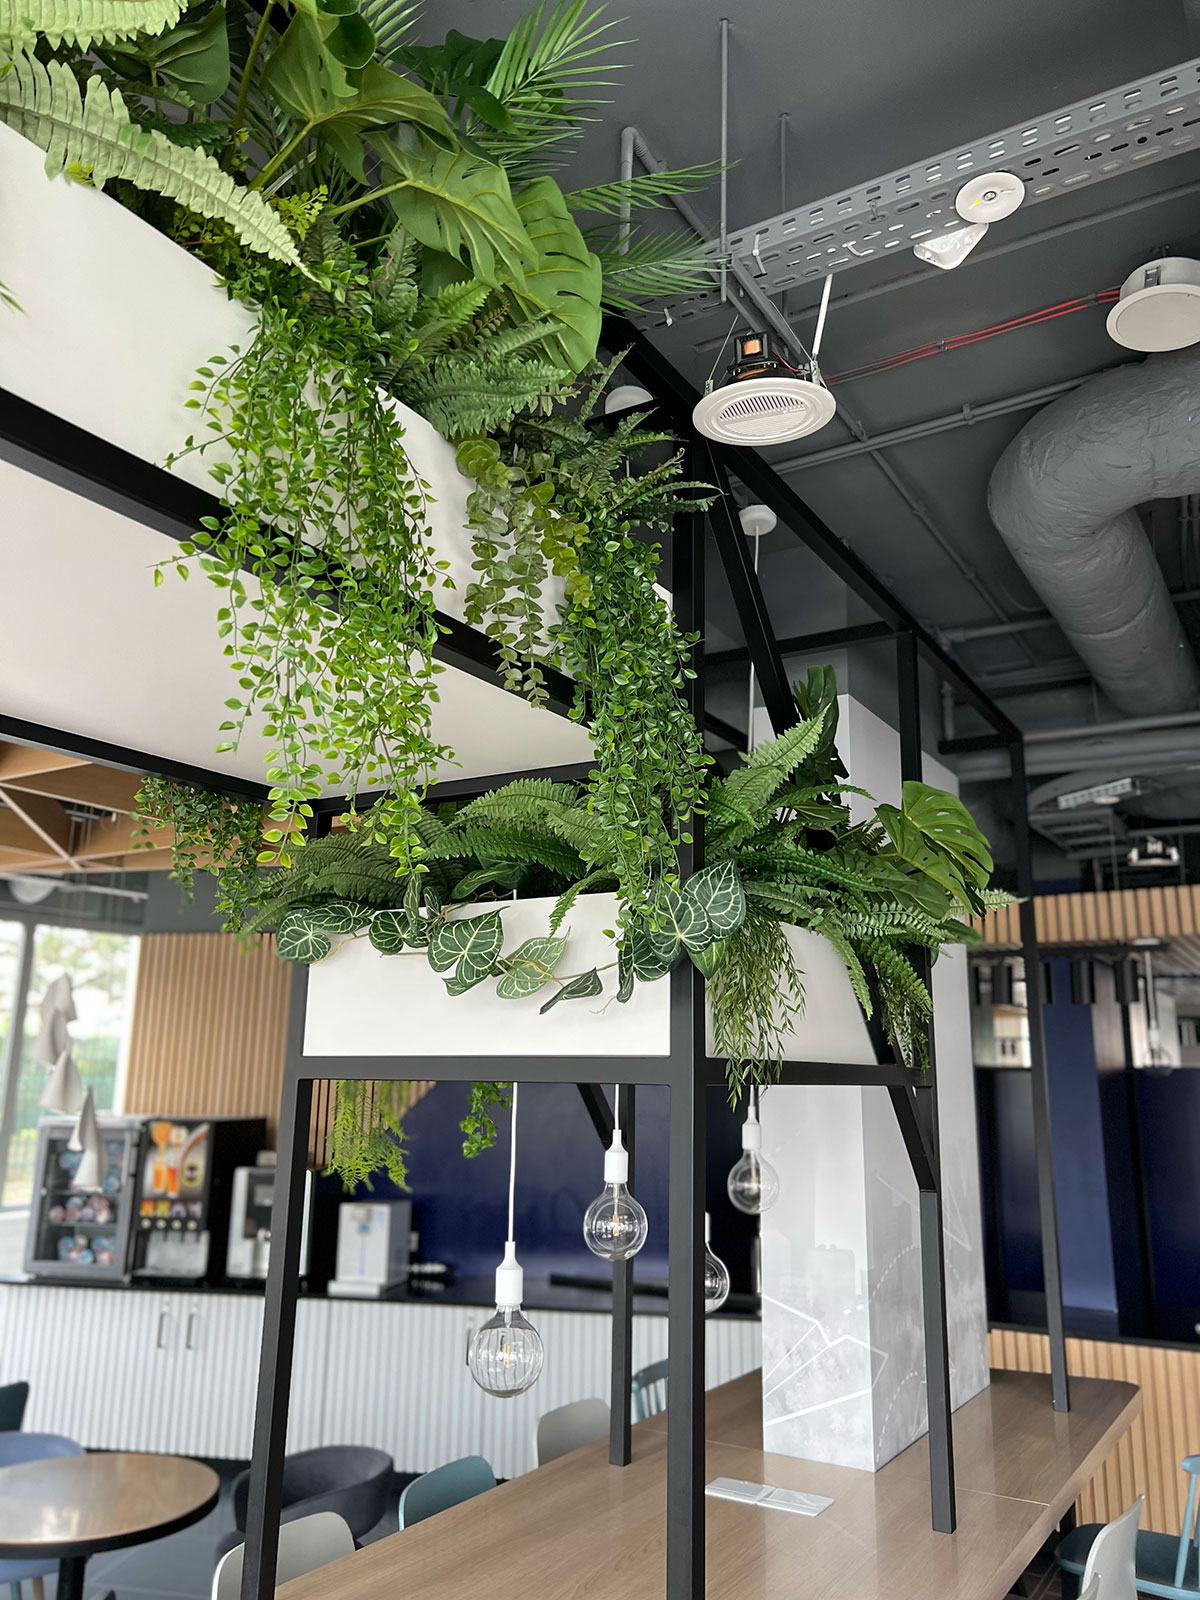 Biuro Booksy z roślinami zwisającymi z sufitu.